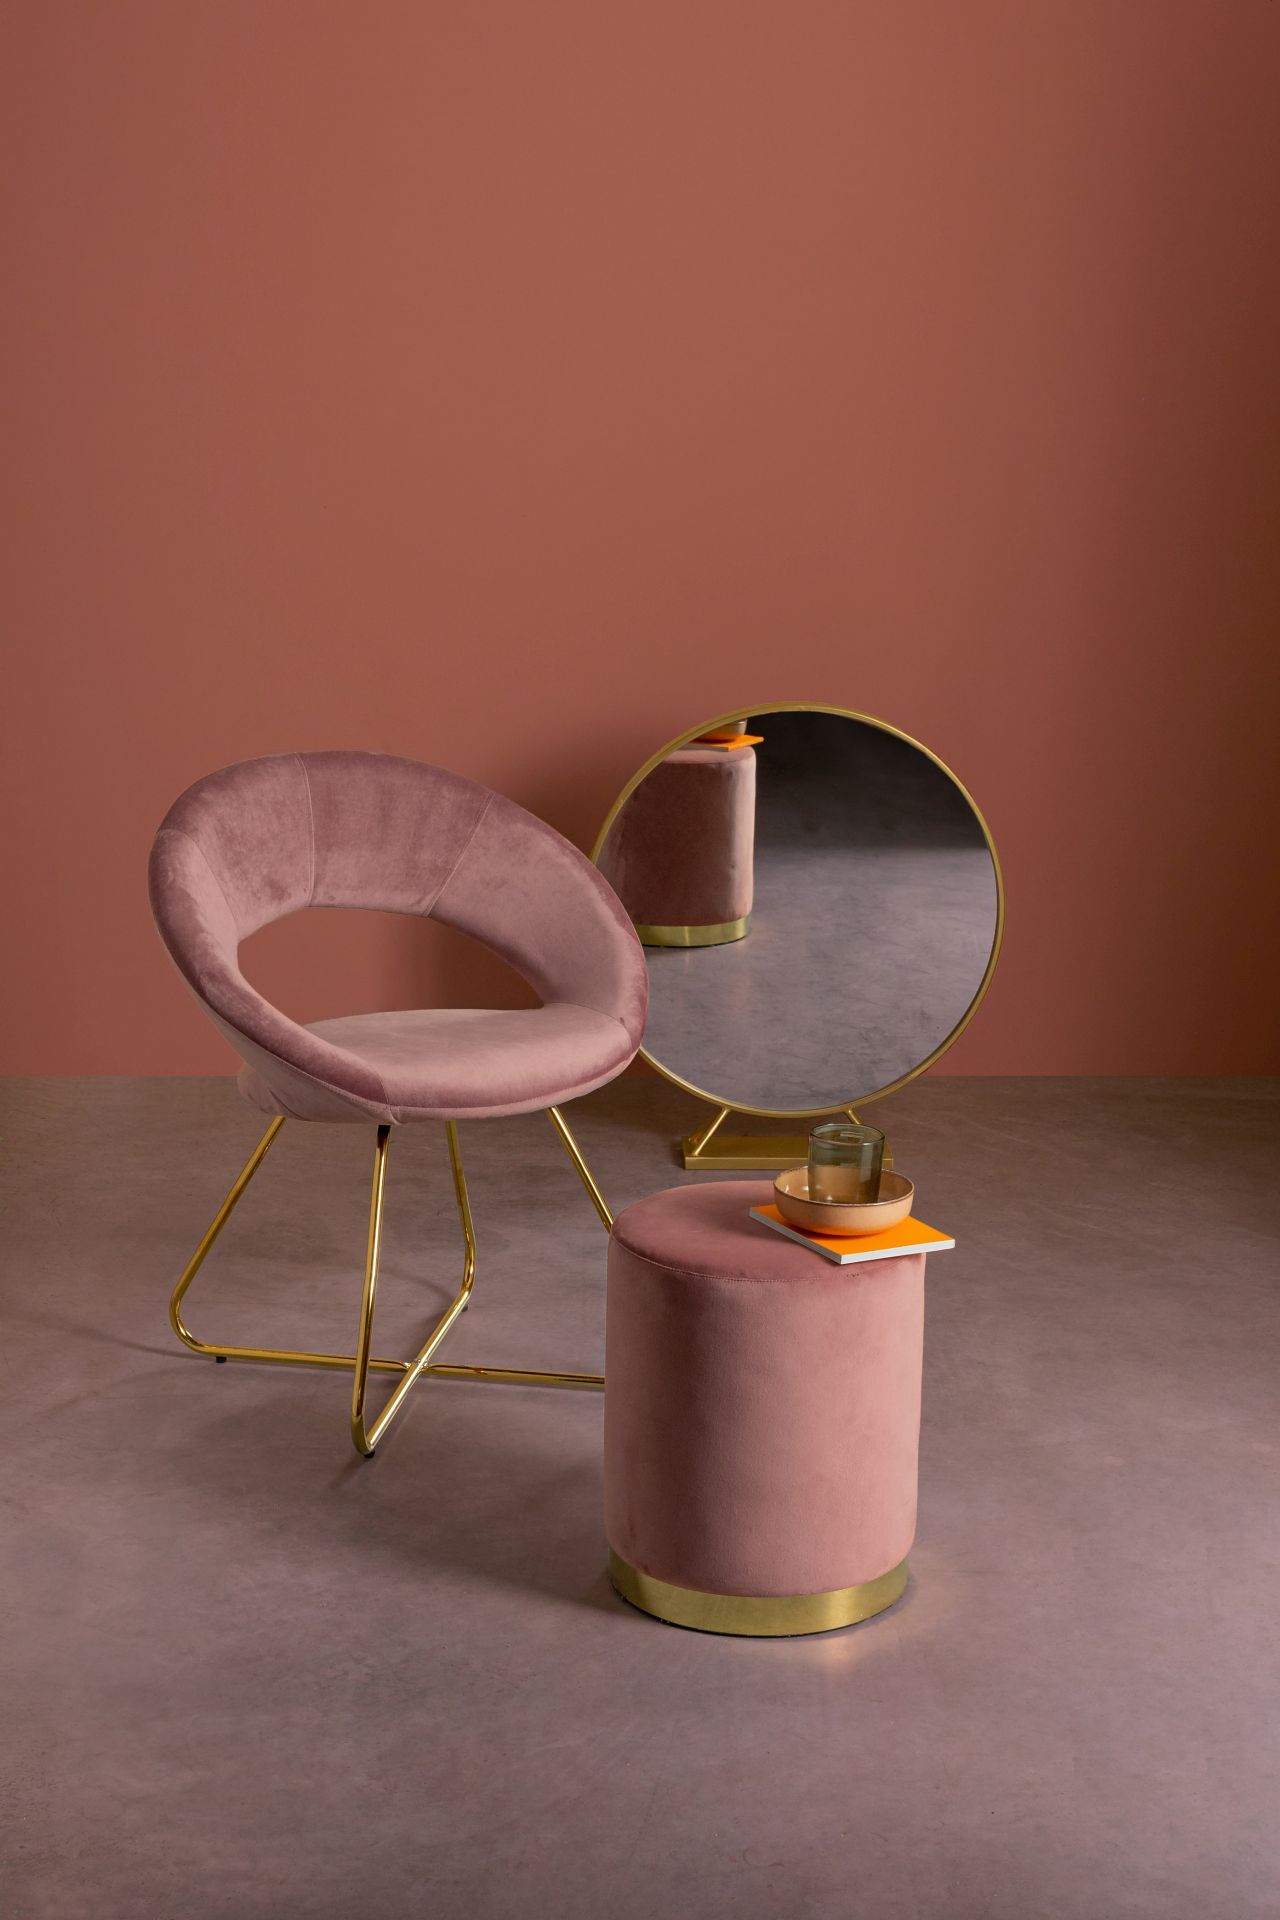 Der Sessel Vanity überzeugt mit seinem modernen Design. Gefertigt wurde er aus Stoff in Samt-Optik, welcher einen rosa Farbton besitzt. Das Gestell ist aus Metall und hat eine goldene Farbe. Der Sessel besitzt eine Sitzhöhe von 49 cm. Die Breite beträgt 5